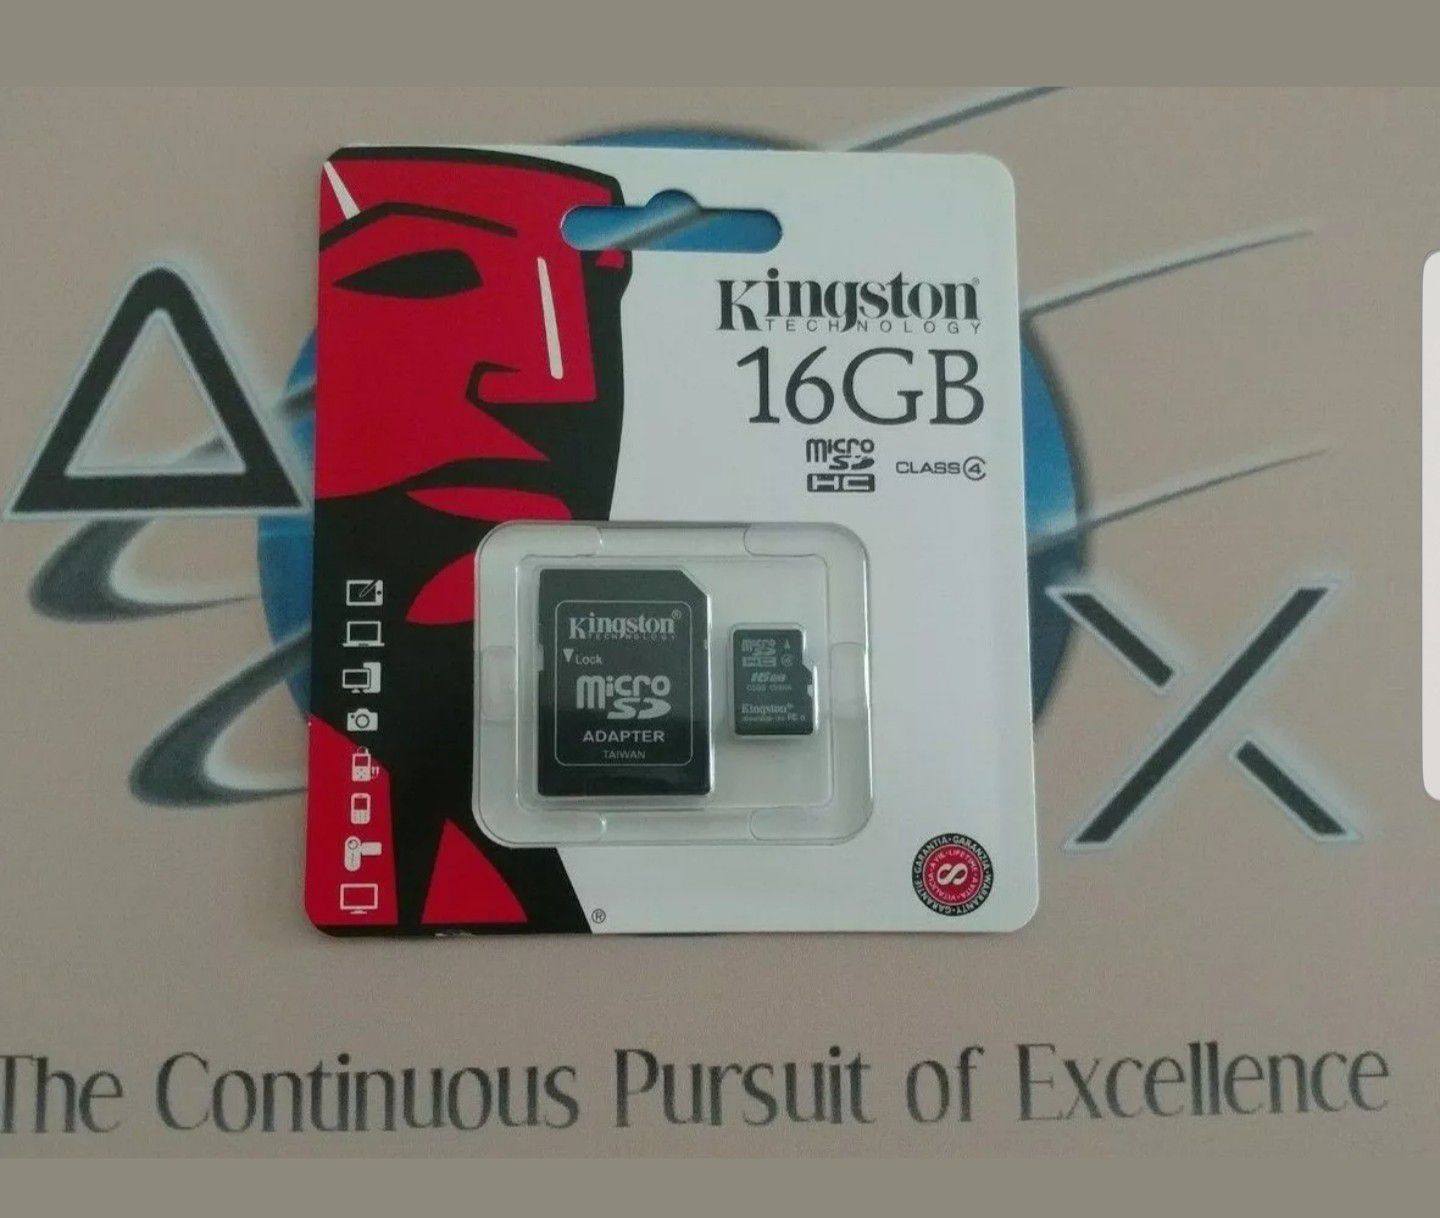 16GB Kingston micro sd card